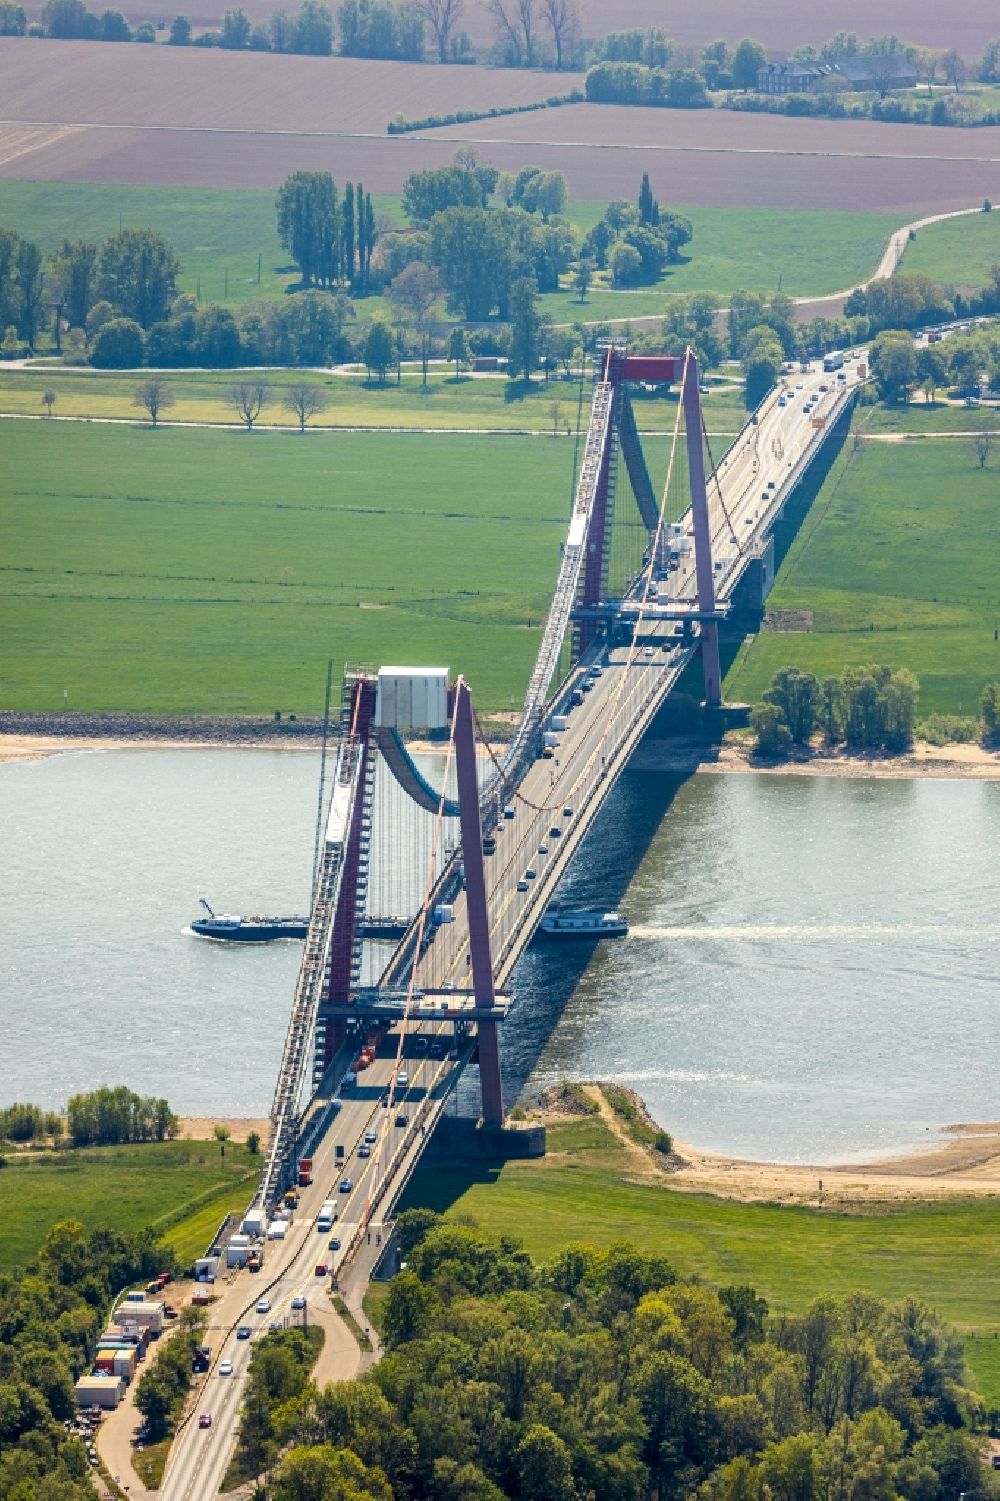 Luftaufnahme Emmerich am Rhein - Baustelle zu Sanierungsarbeiten am Straßen- Brückenbauwerk der Rheinbrücke in Emmerich am Rhein im Bundesland Nordrhein-Westfalen, Deutschland